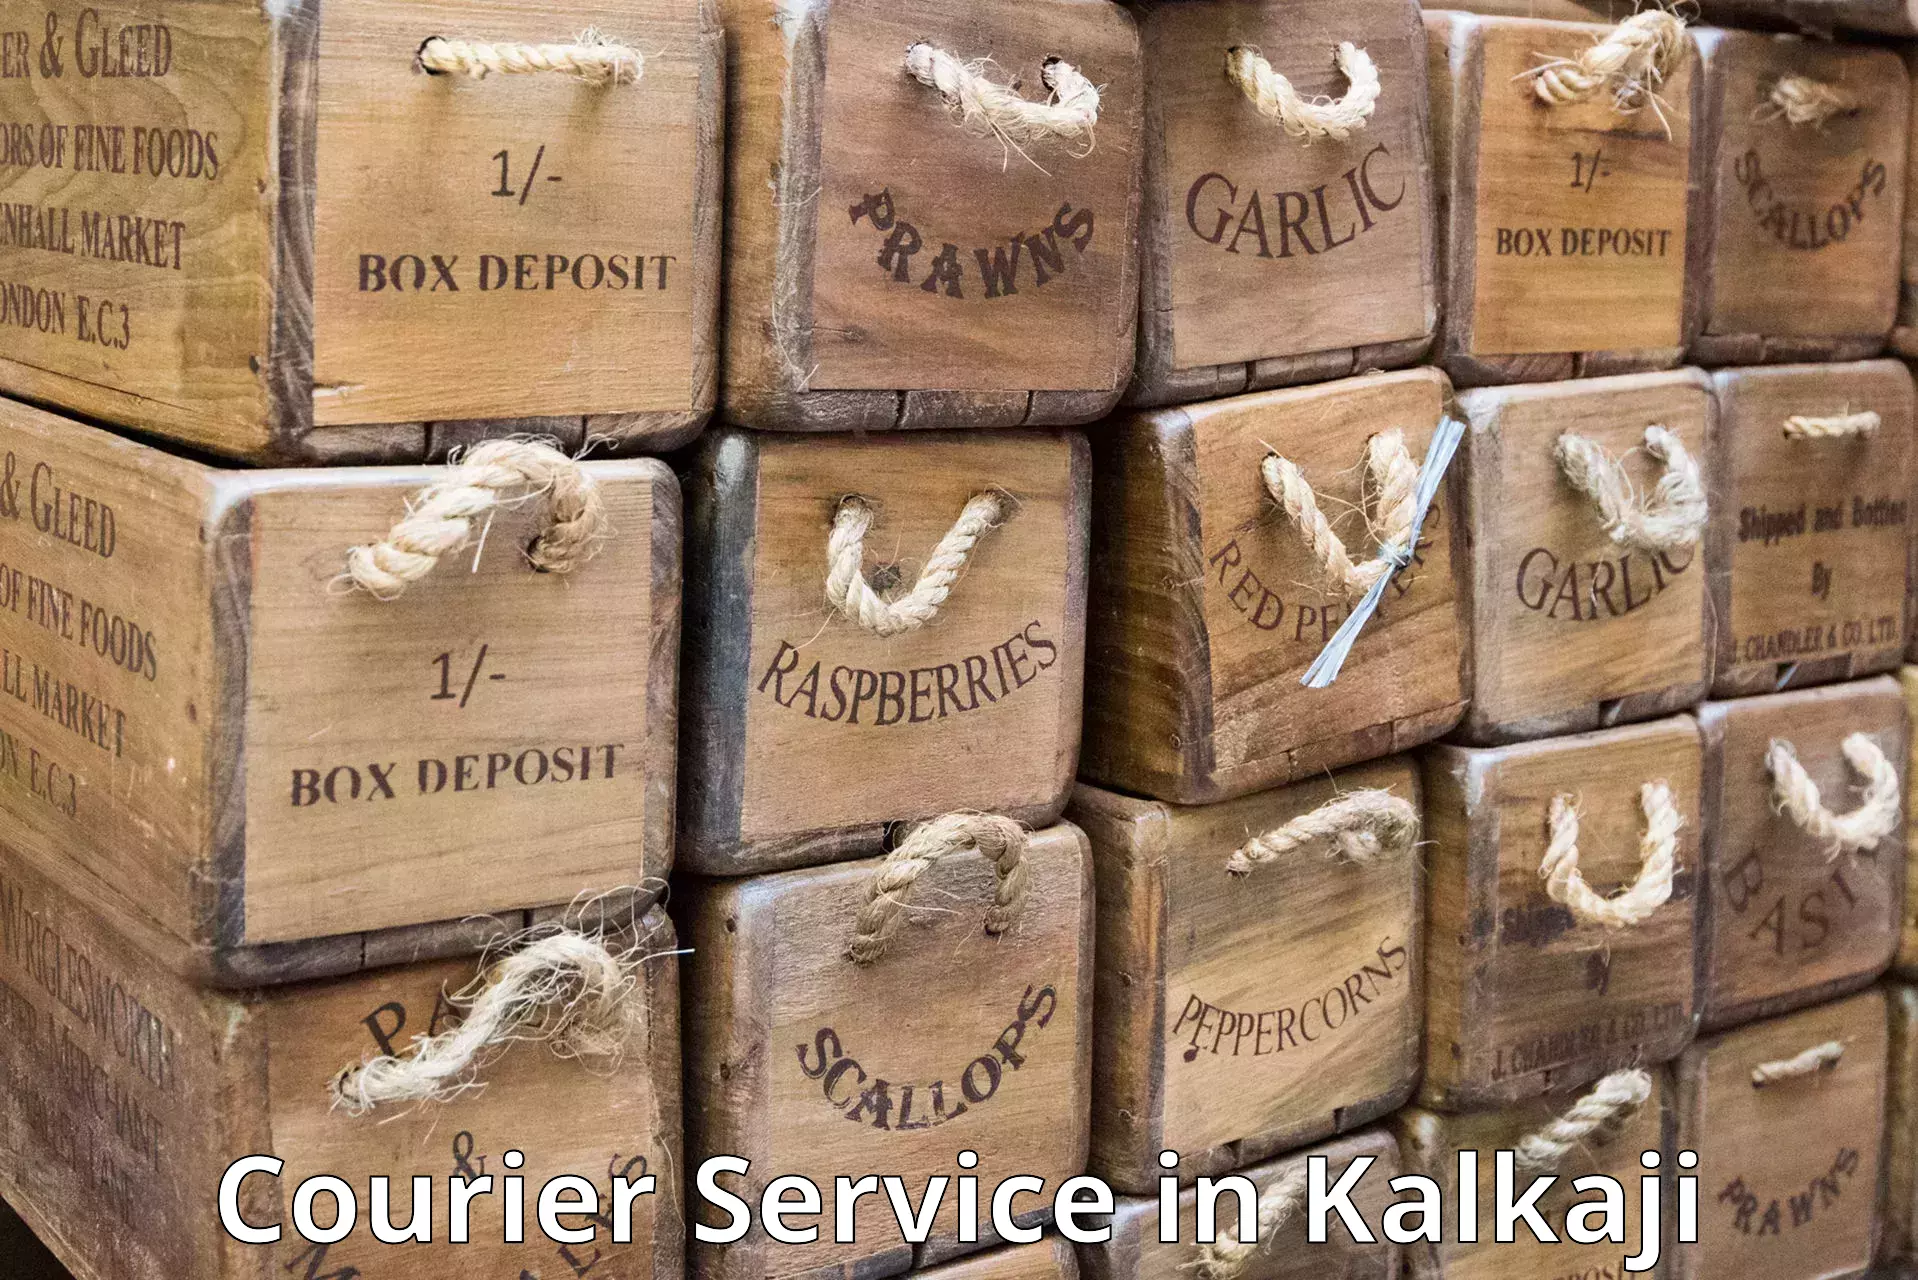 Air courier services in Kalkaji